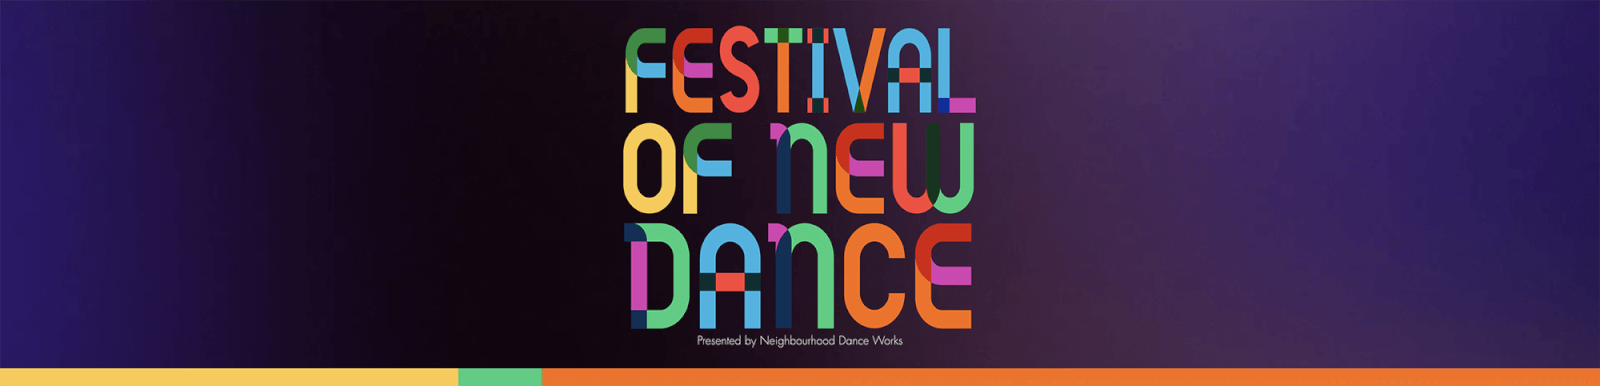 Festival of New Dance